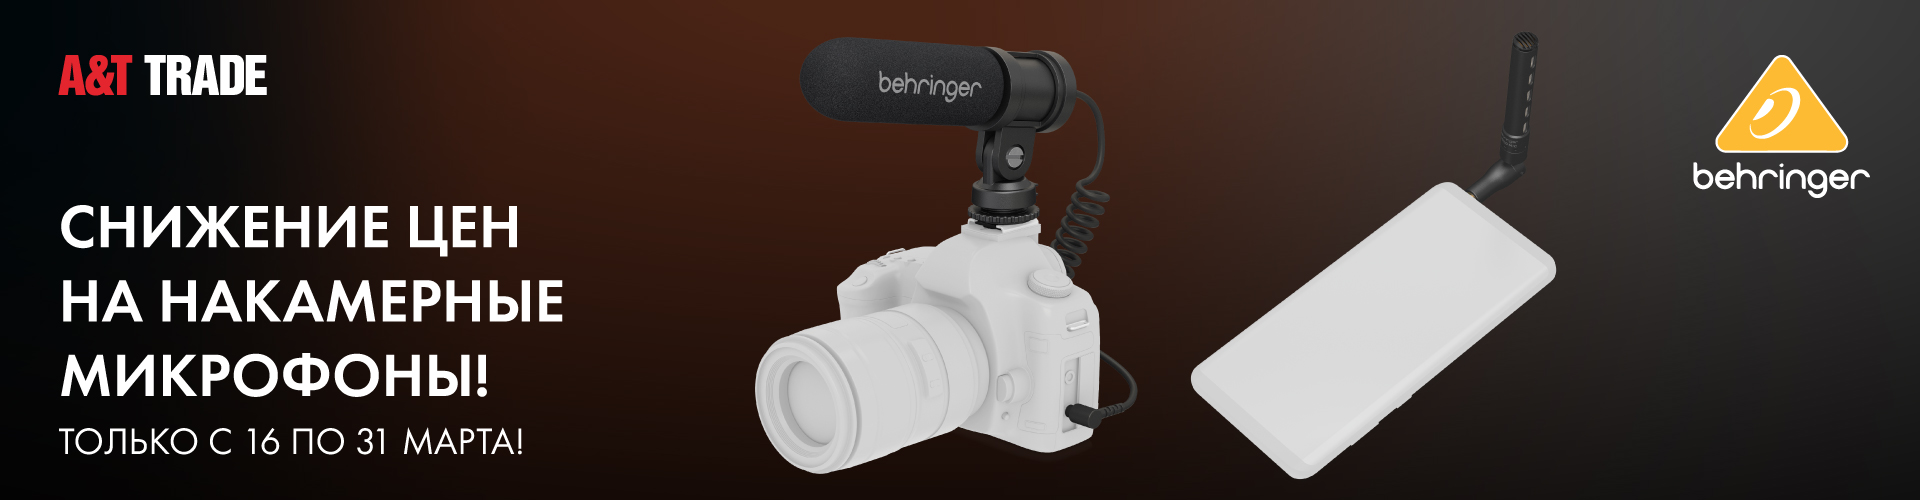 Акция на компактные микрофоны Behringer Video Mic для смартфонов и камер